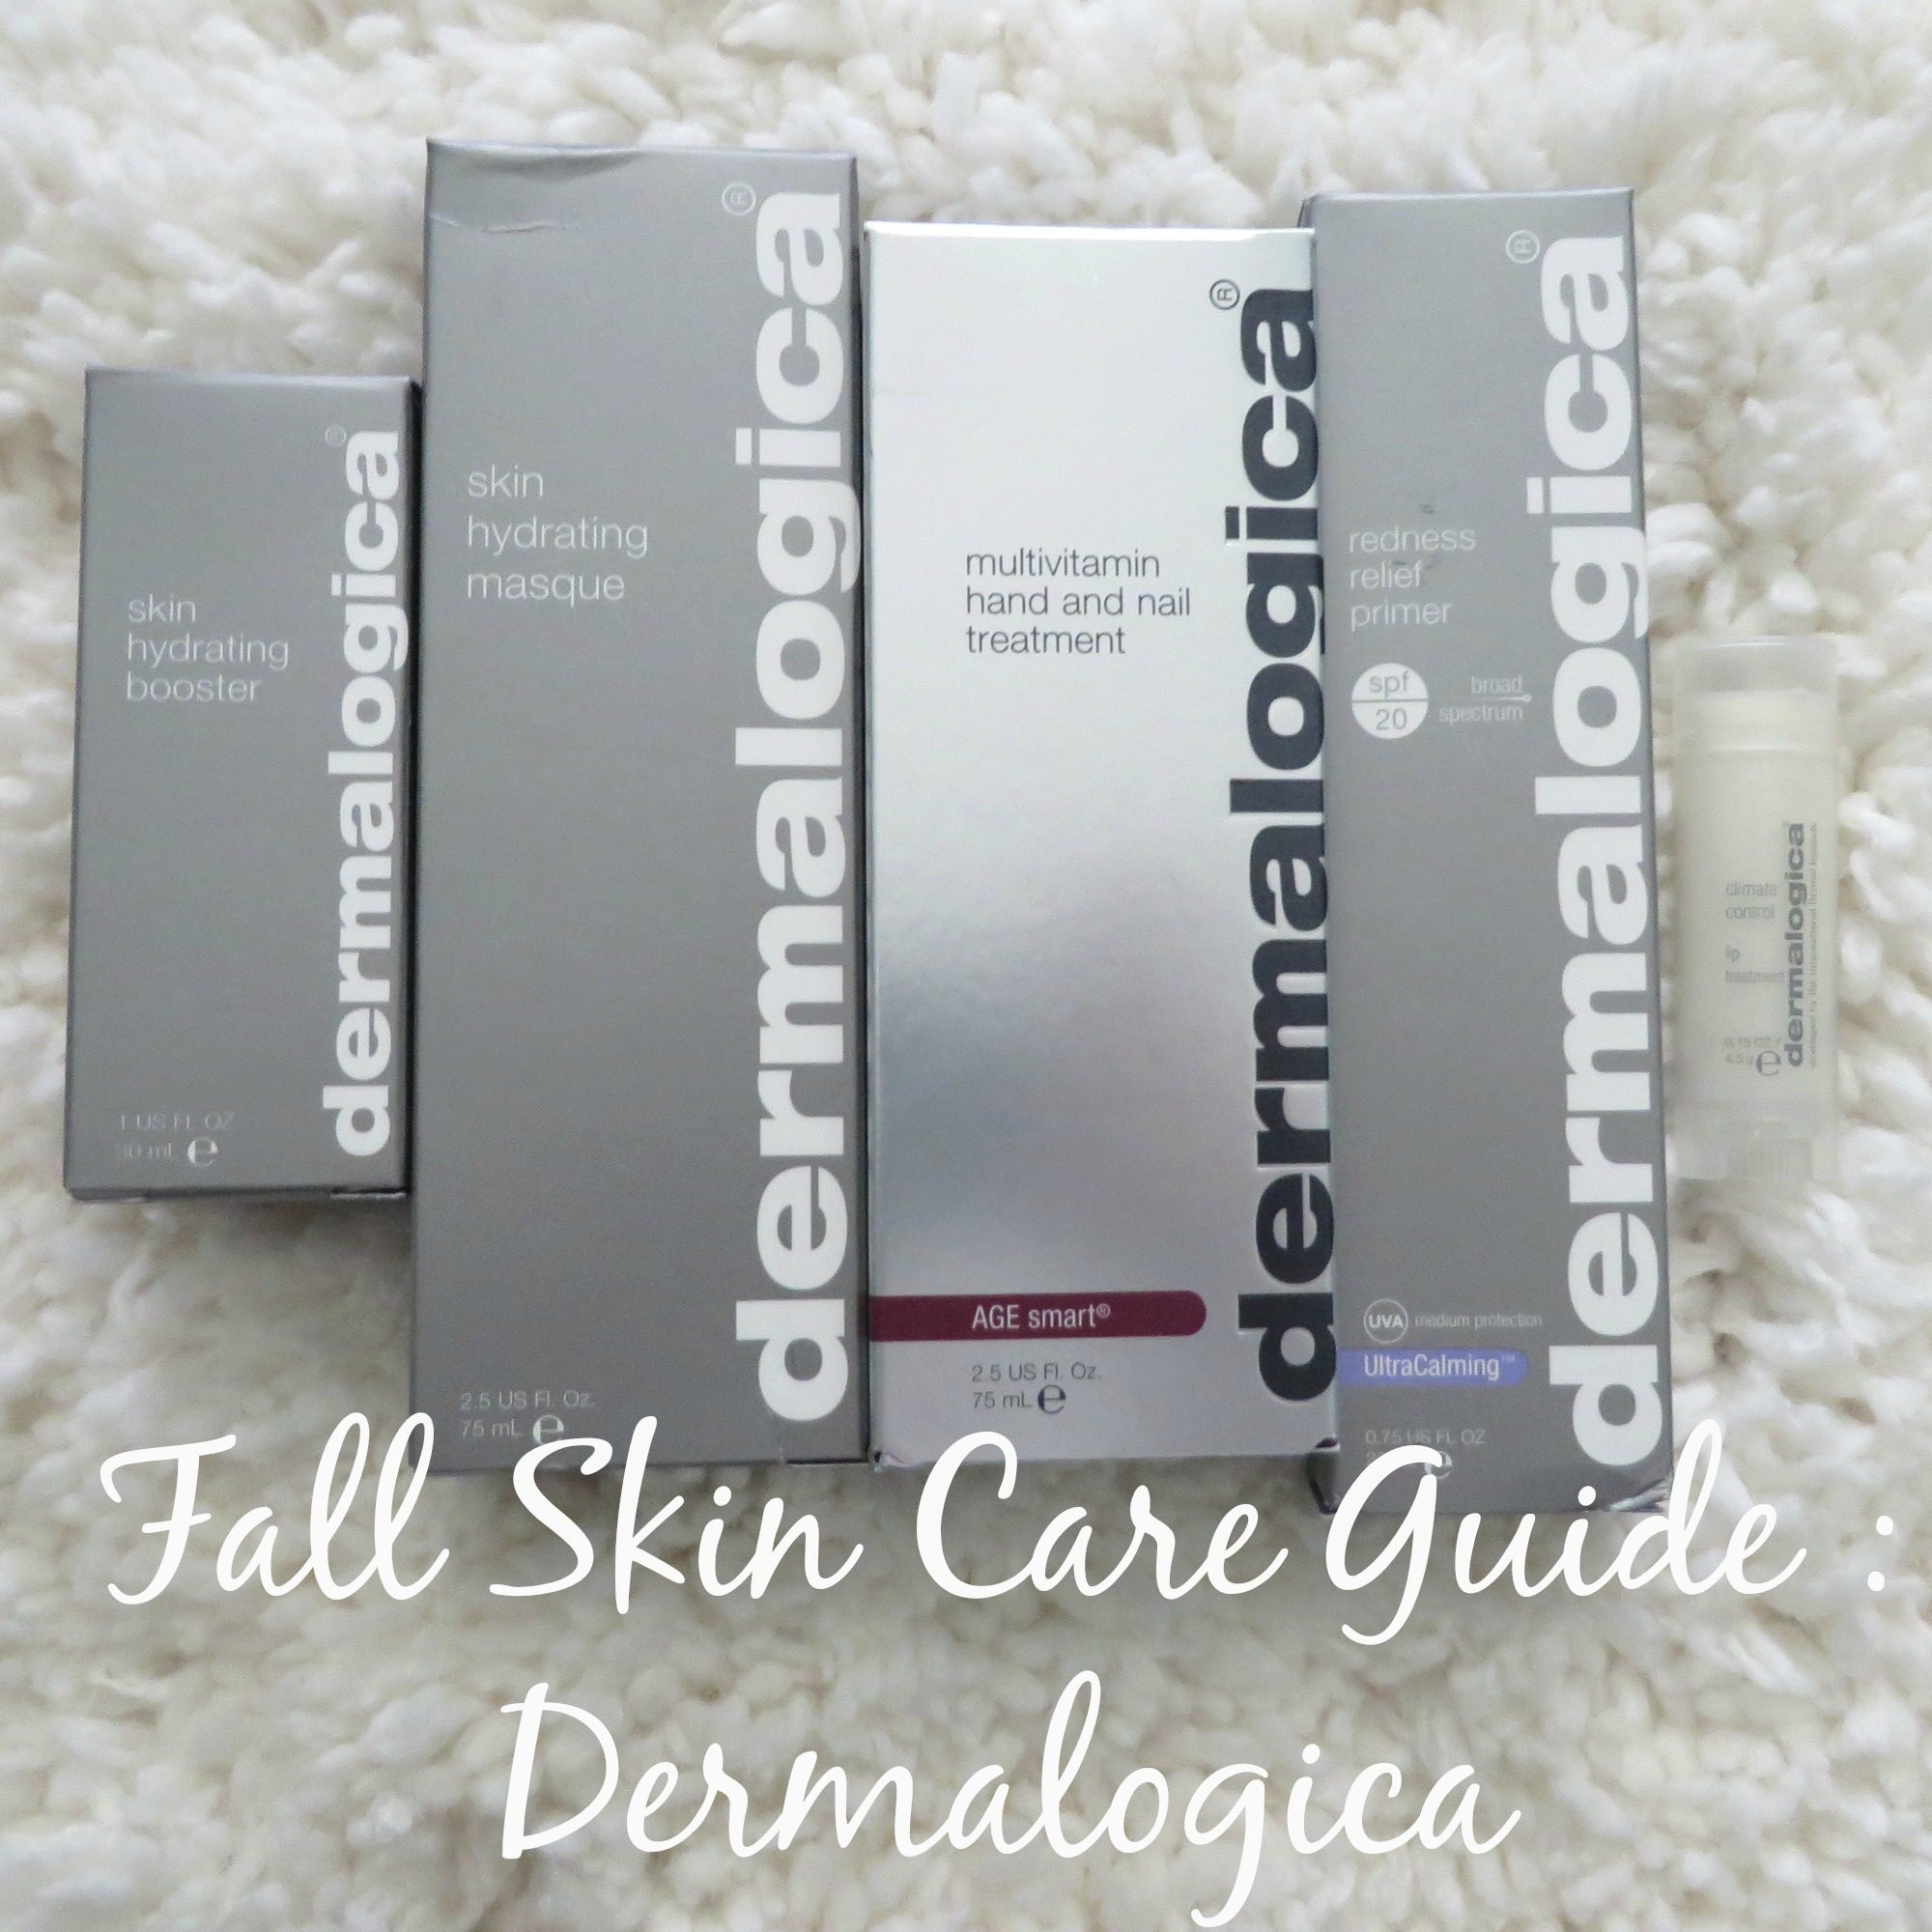 Fall Skin Care Guide featuring : Stine